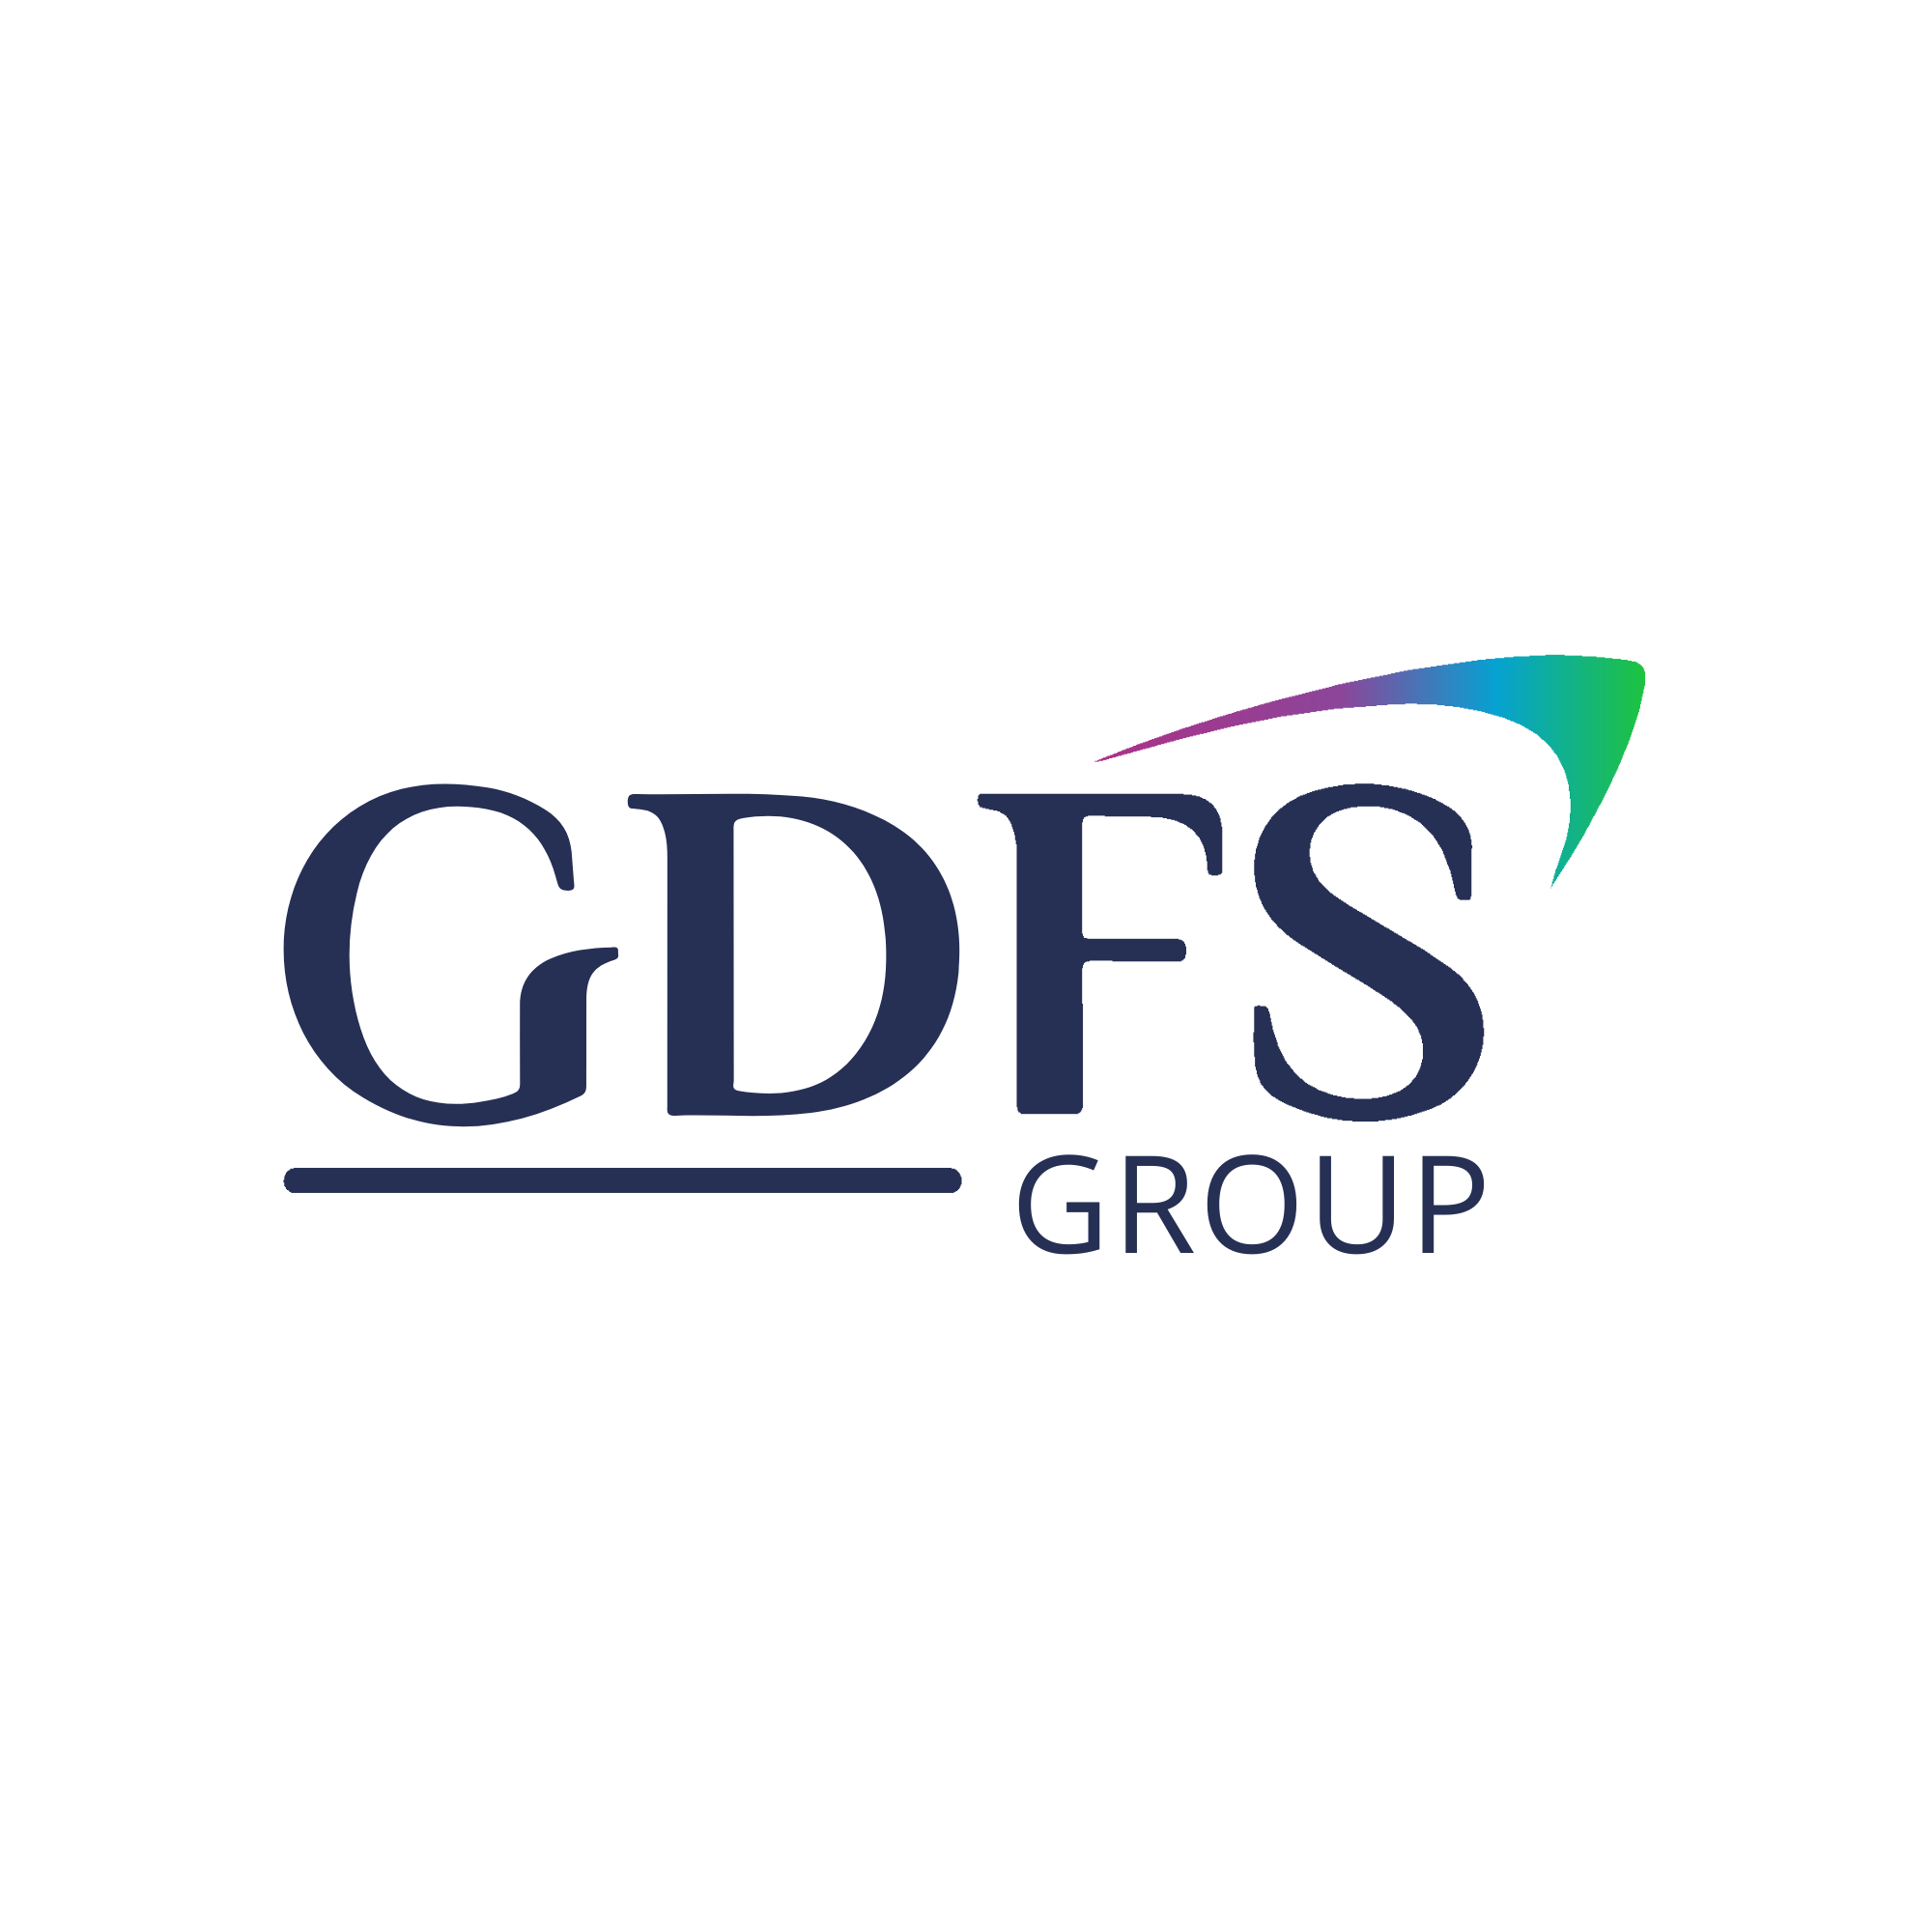 GDFS Group